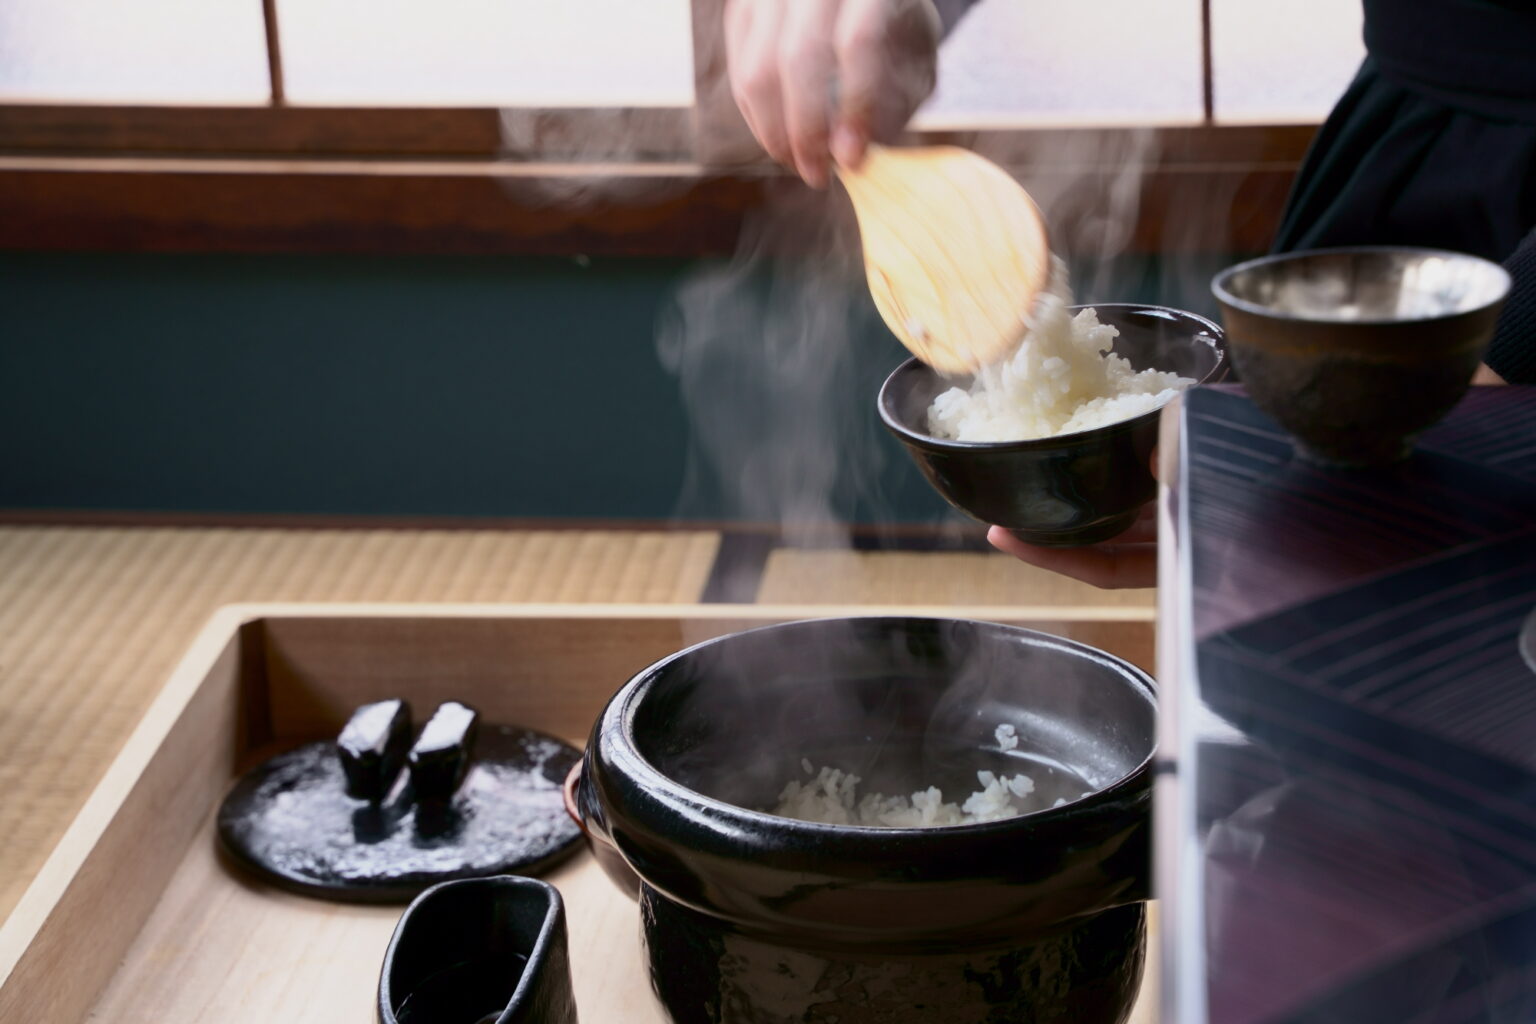 土鍋で炊いたご飯は、香りも豊か。